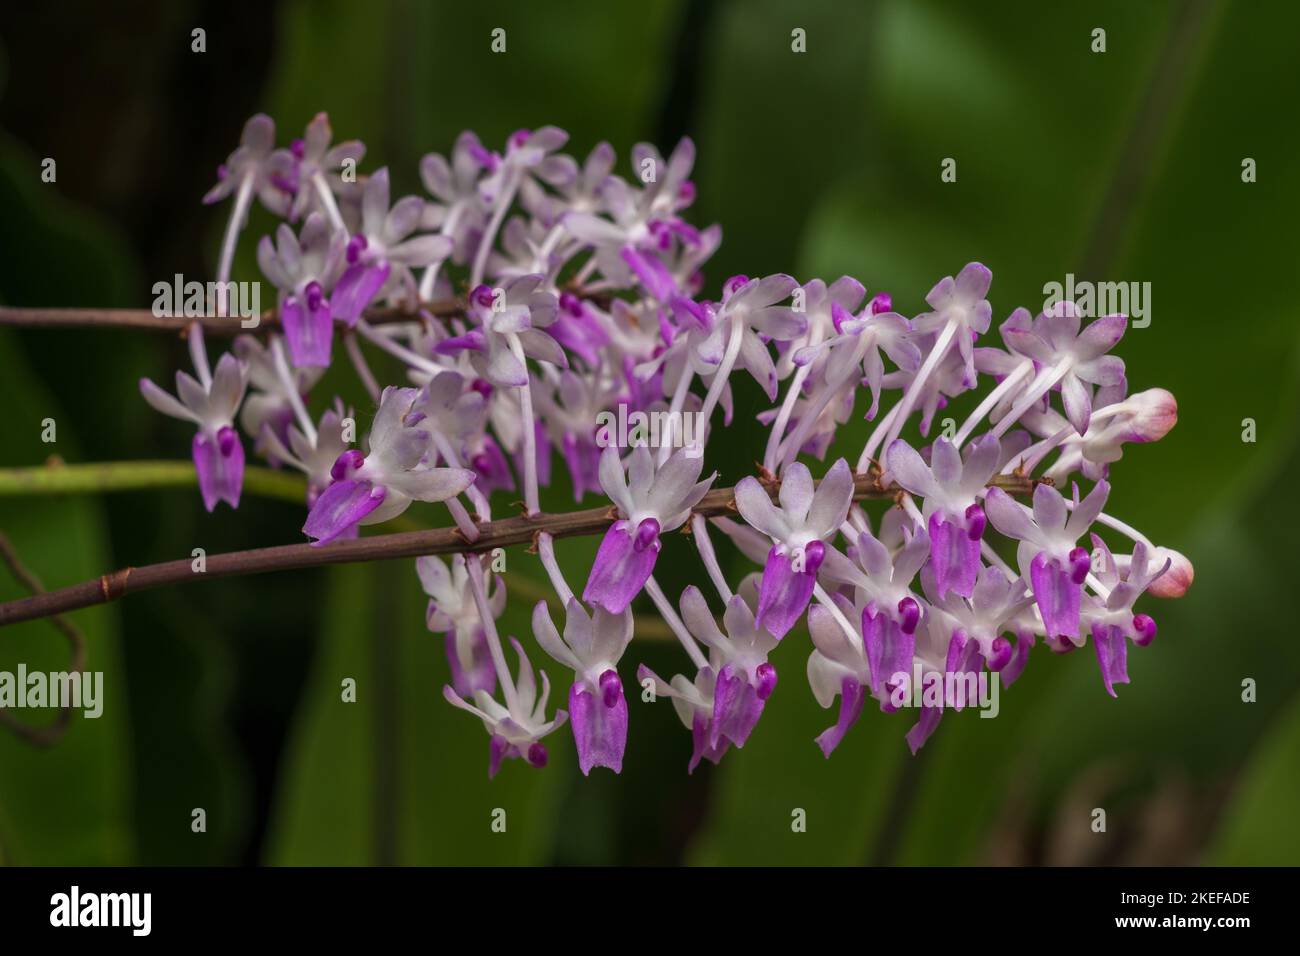 Gros plan de l'espèce épiphytique d'orchidées seidenfadenia mitrata fleurs pourpres et blanches fleurir à l'extérieur sur fond vert naturel Banque D'Images